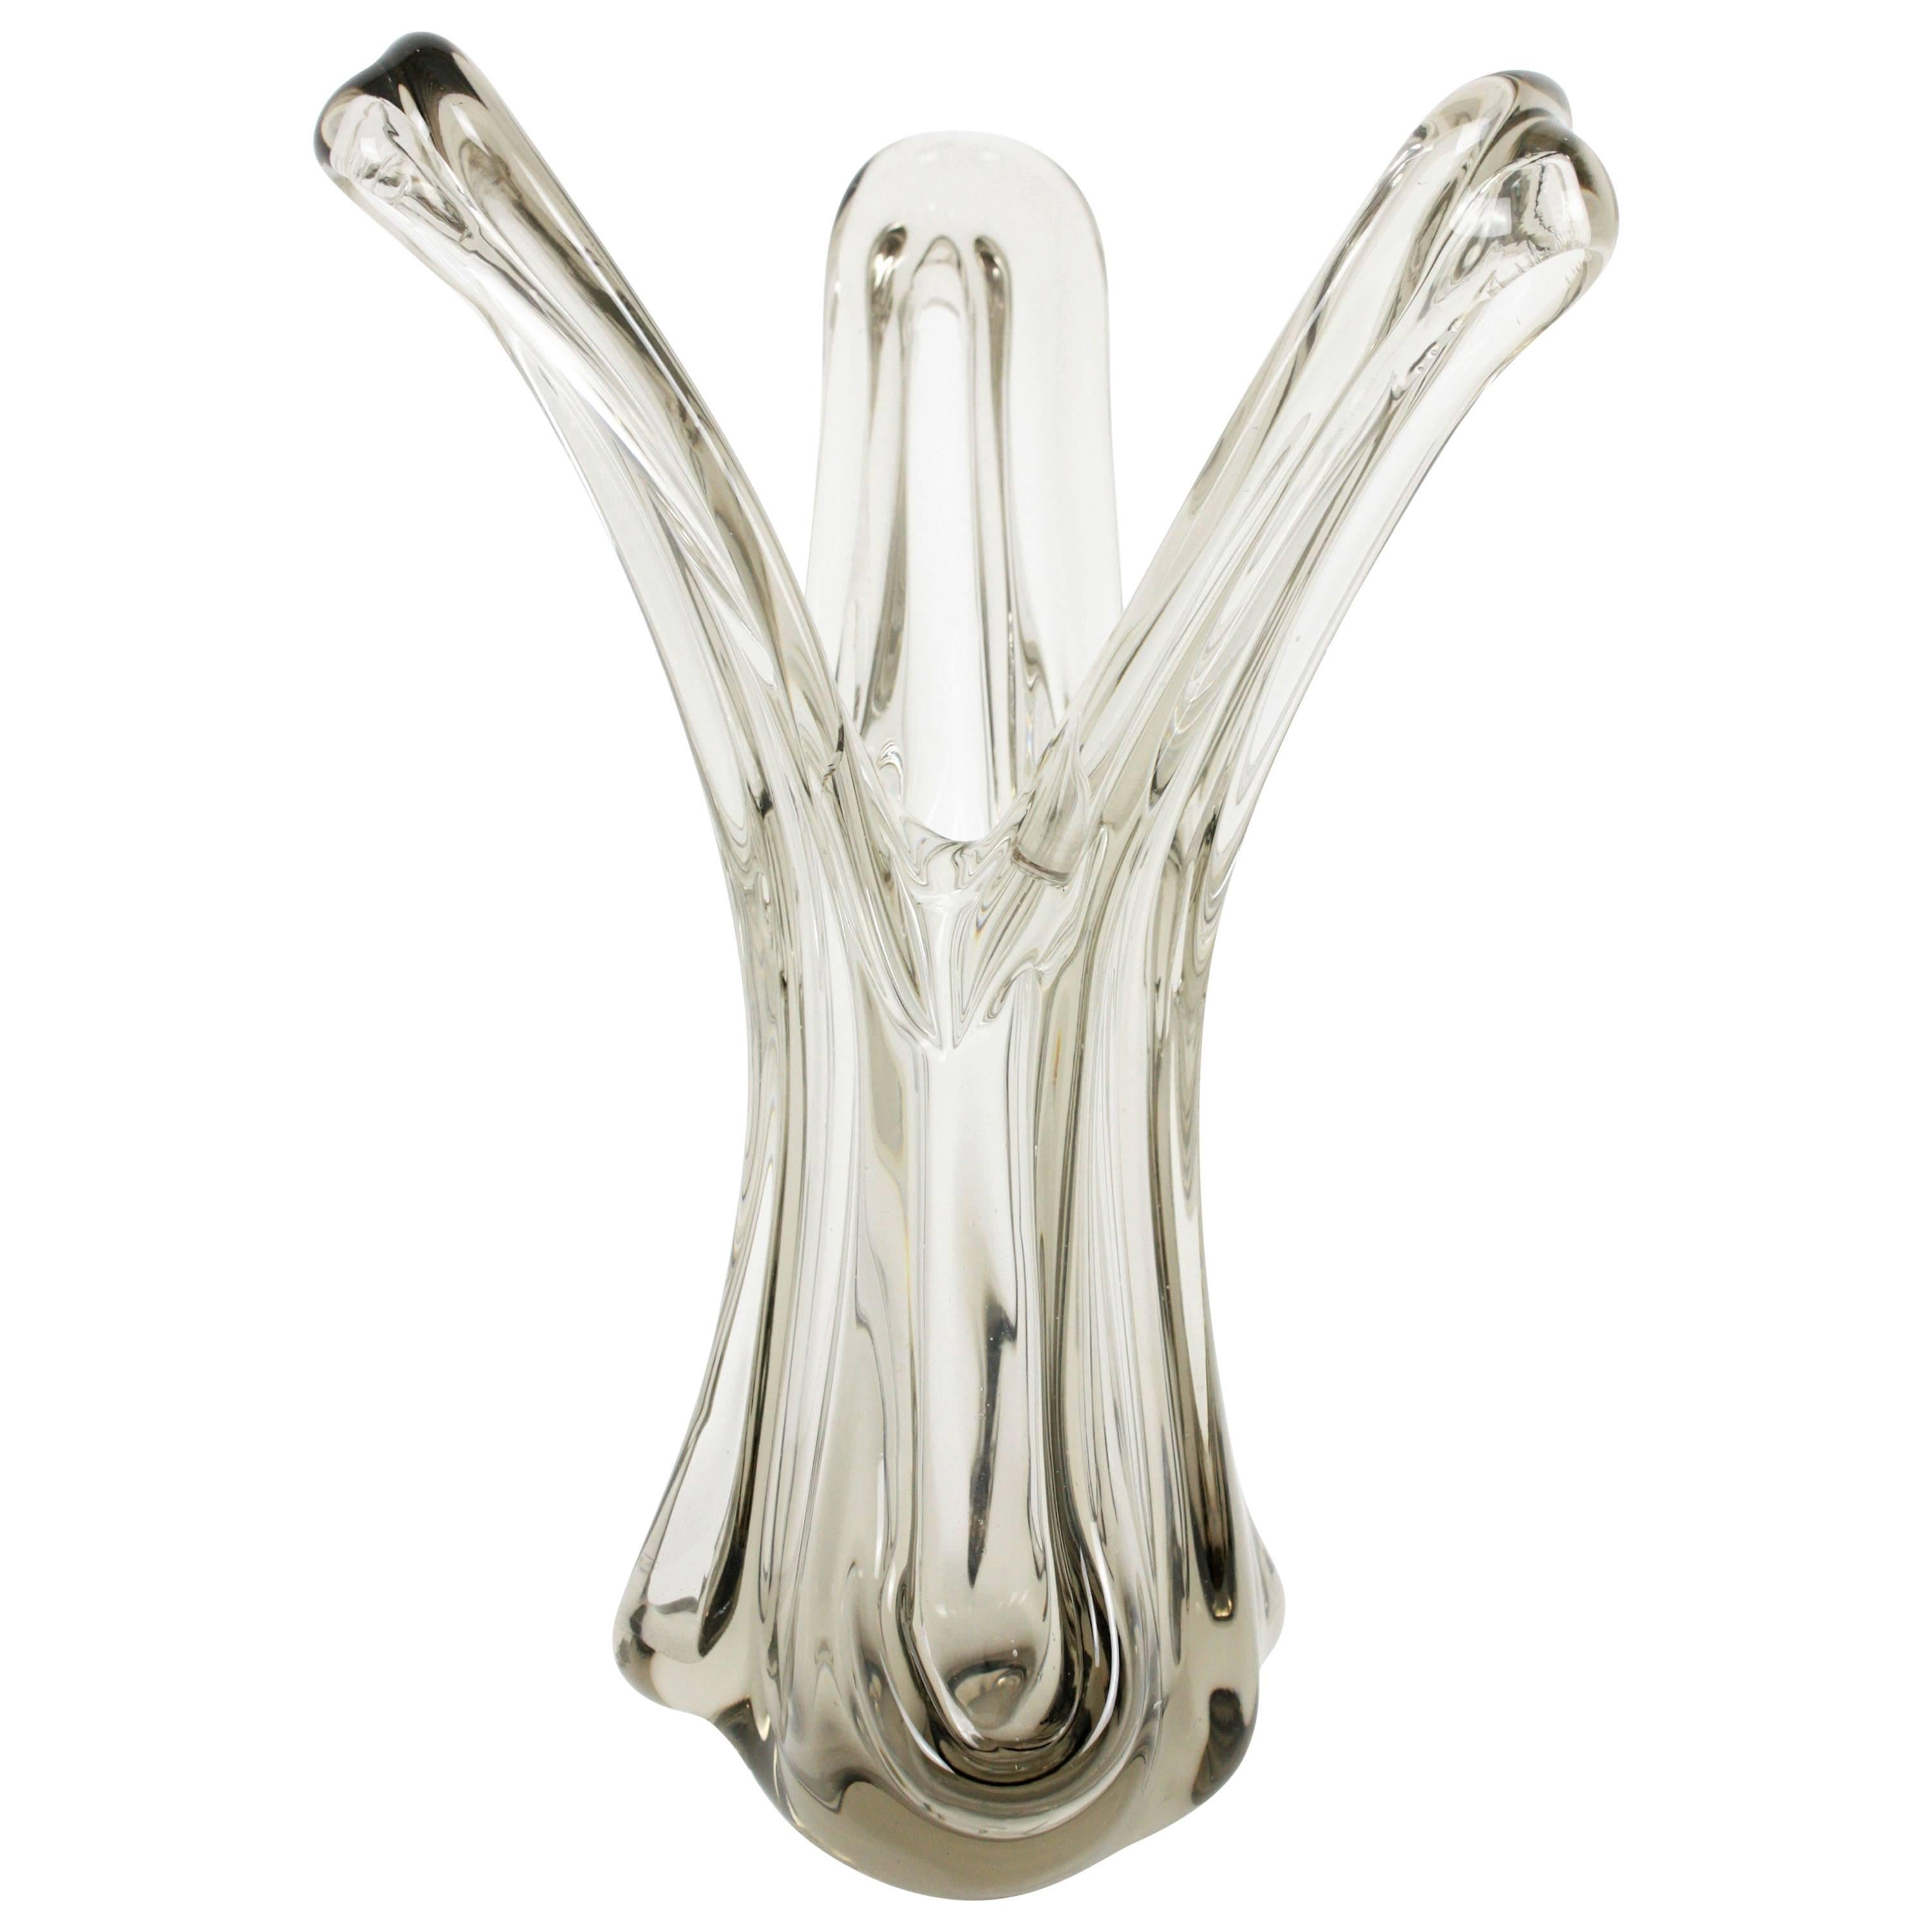 Vase ouvert sculptural en verre italien de Murano soufflé à la main, en verre clair et fumé. Italie, années 1960.
Son design organique aux formes sionueuses est très décoratif. 
Magnifique pour être présenté comme un vase décoratif de centre de